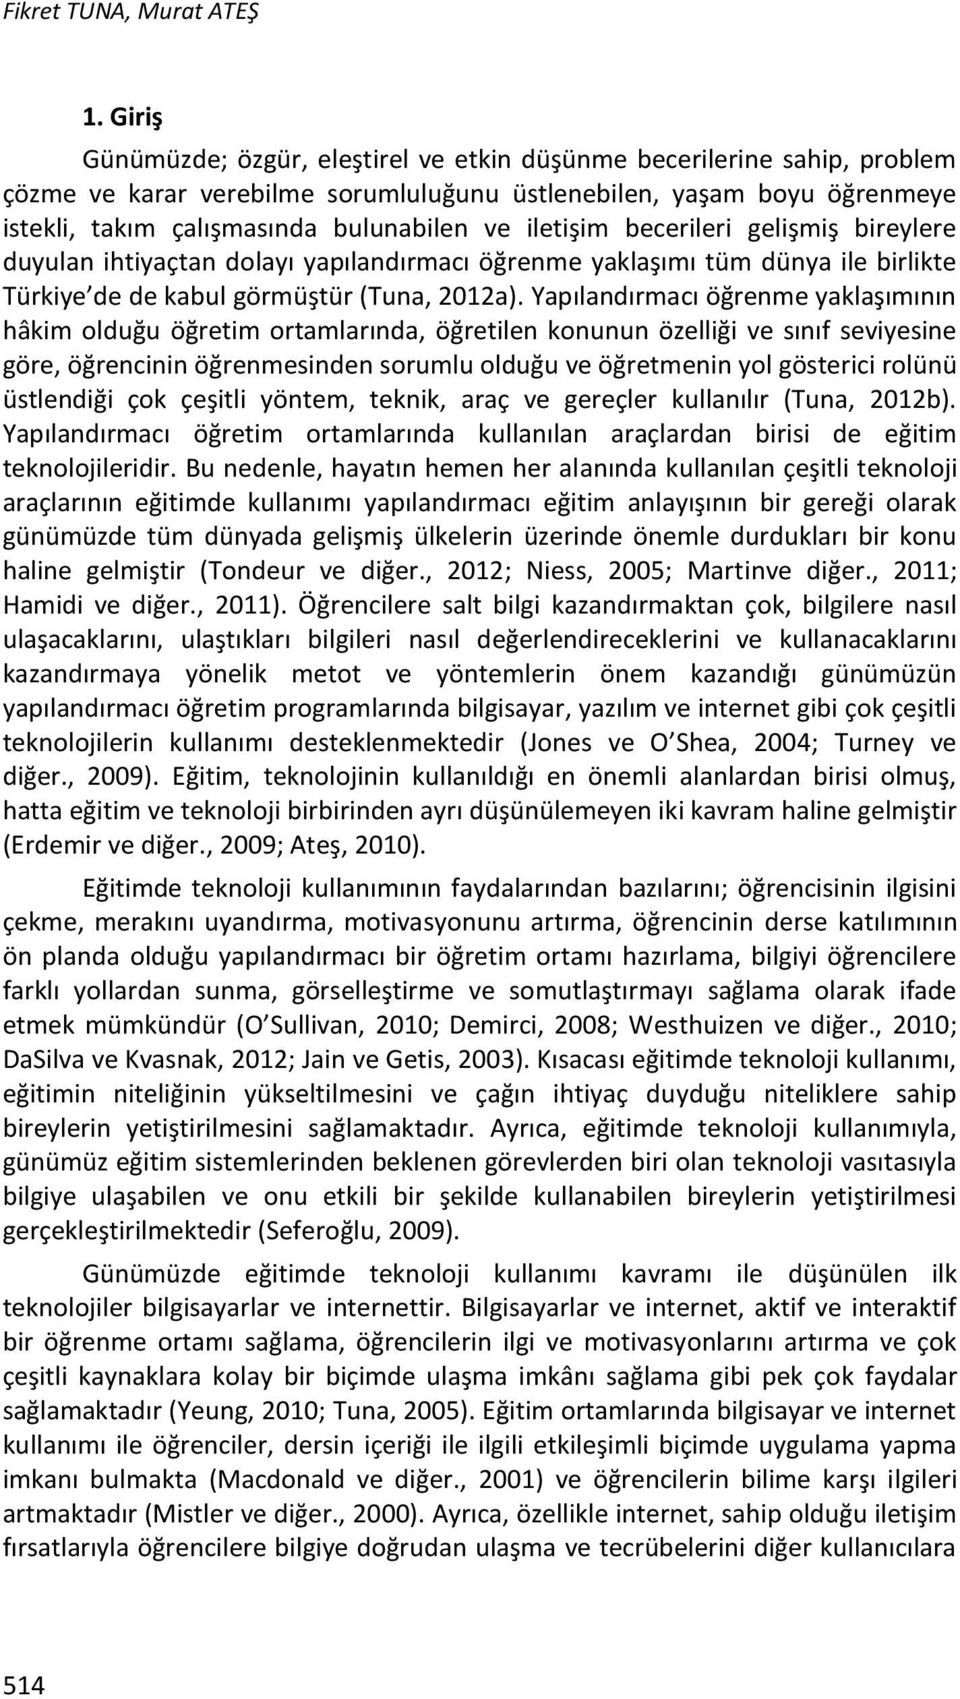 iletişim becerileri gelişmiş bireylere duyulan ihtiyaçtan dolayı yapılandırmacı öğrenme yaklaşımı tüm dünya ile birlikte Türkiye de de kabul görmüştür (Tuna, 2012a).